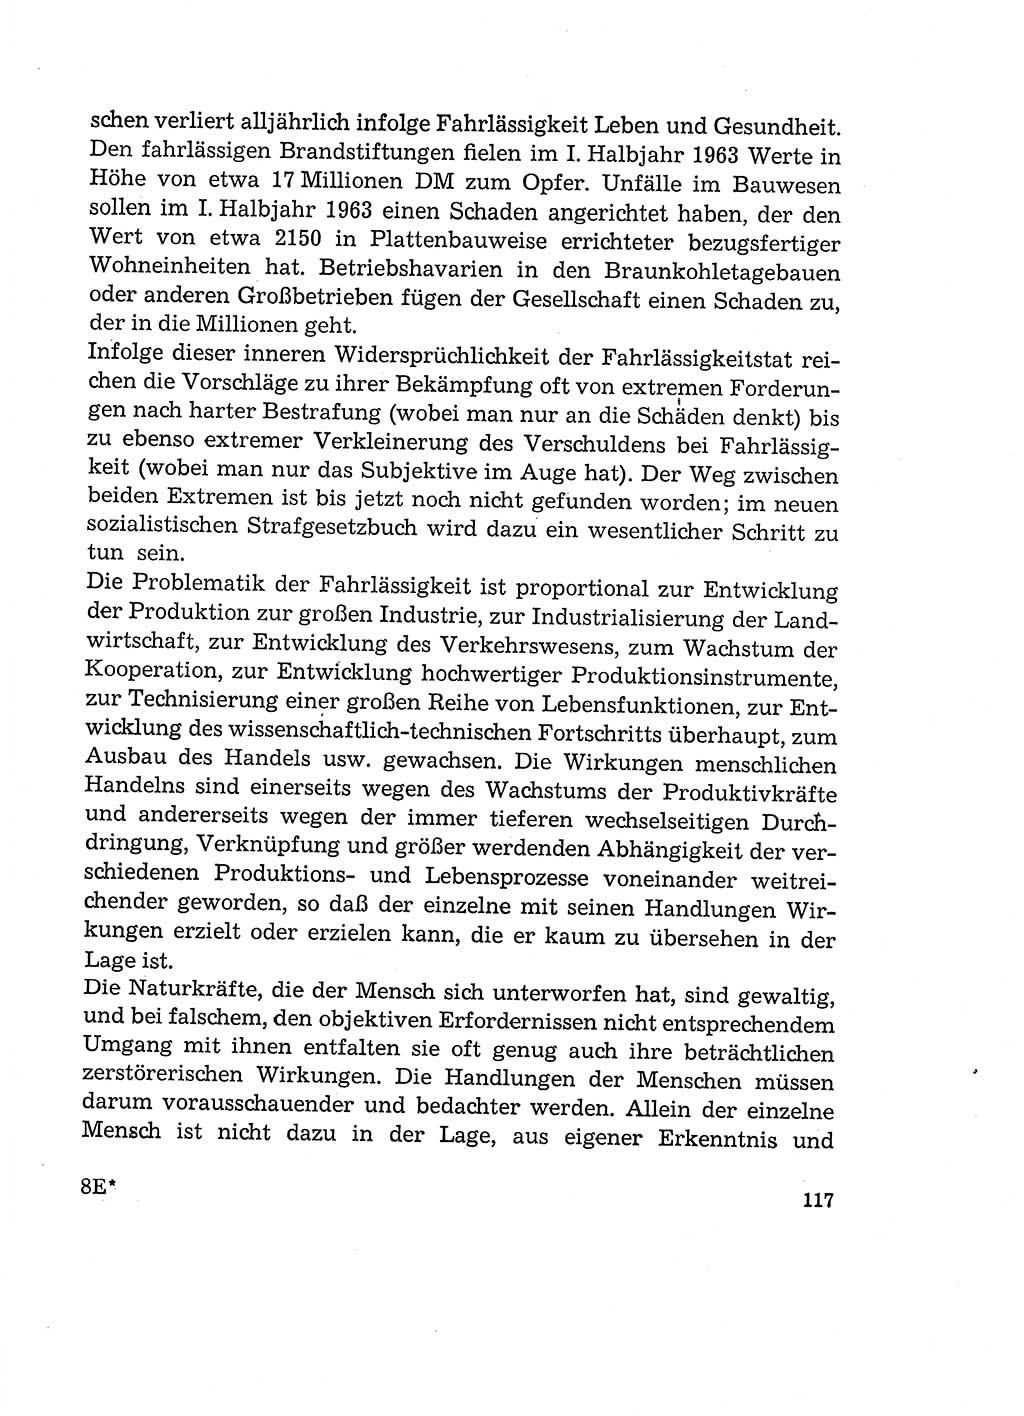 Verantwortung und Schuld im neuen Strafgesetzbuch (StGB) [Deutsche Demokratische Republik (DDR)] 1964, Seite 117 (Verantw. Sch. StGB DDR 1964, S. 117)